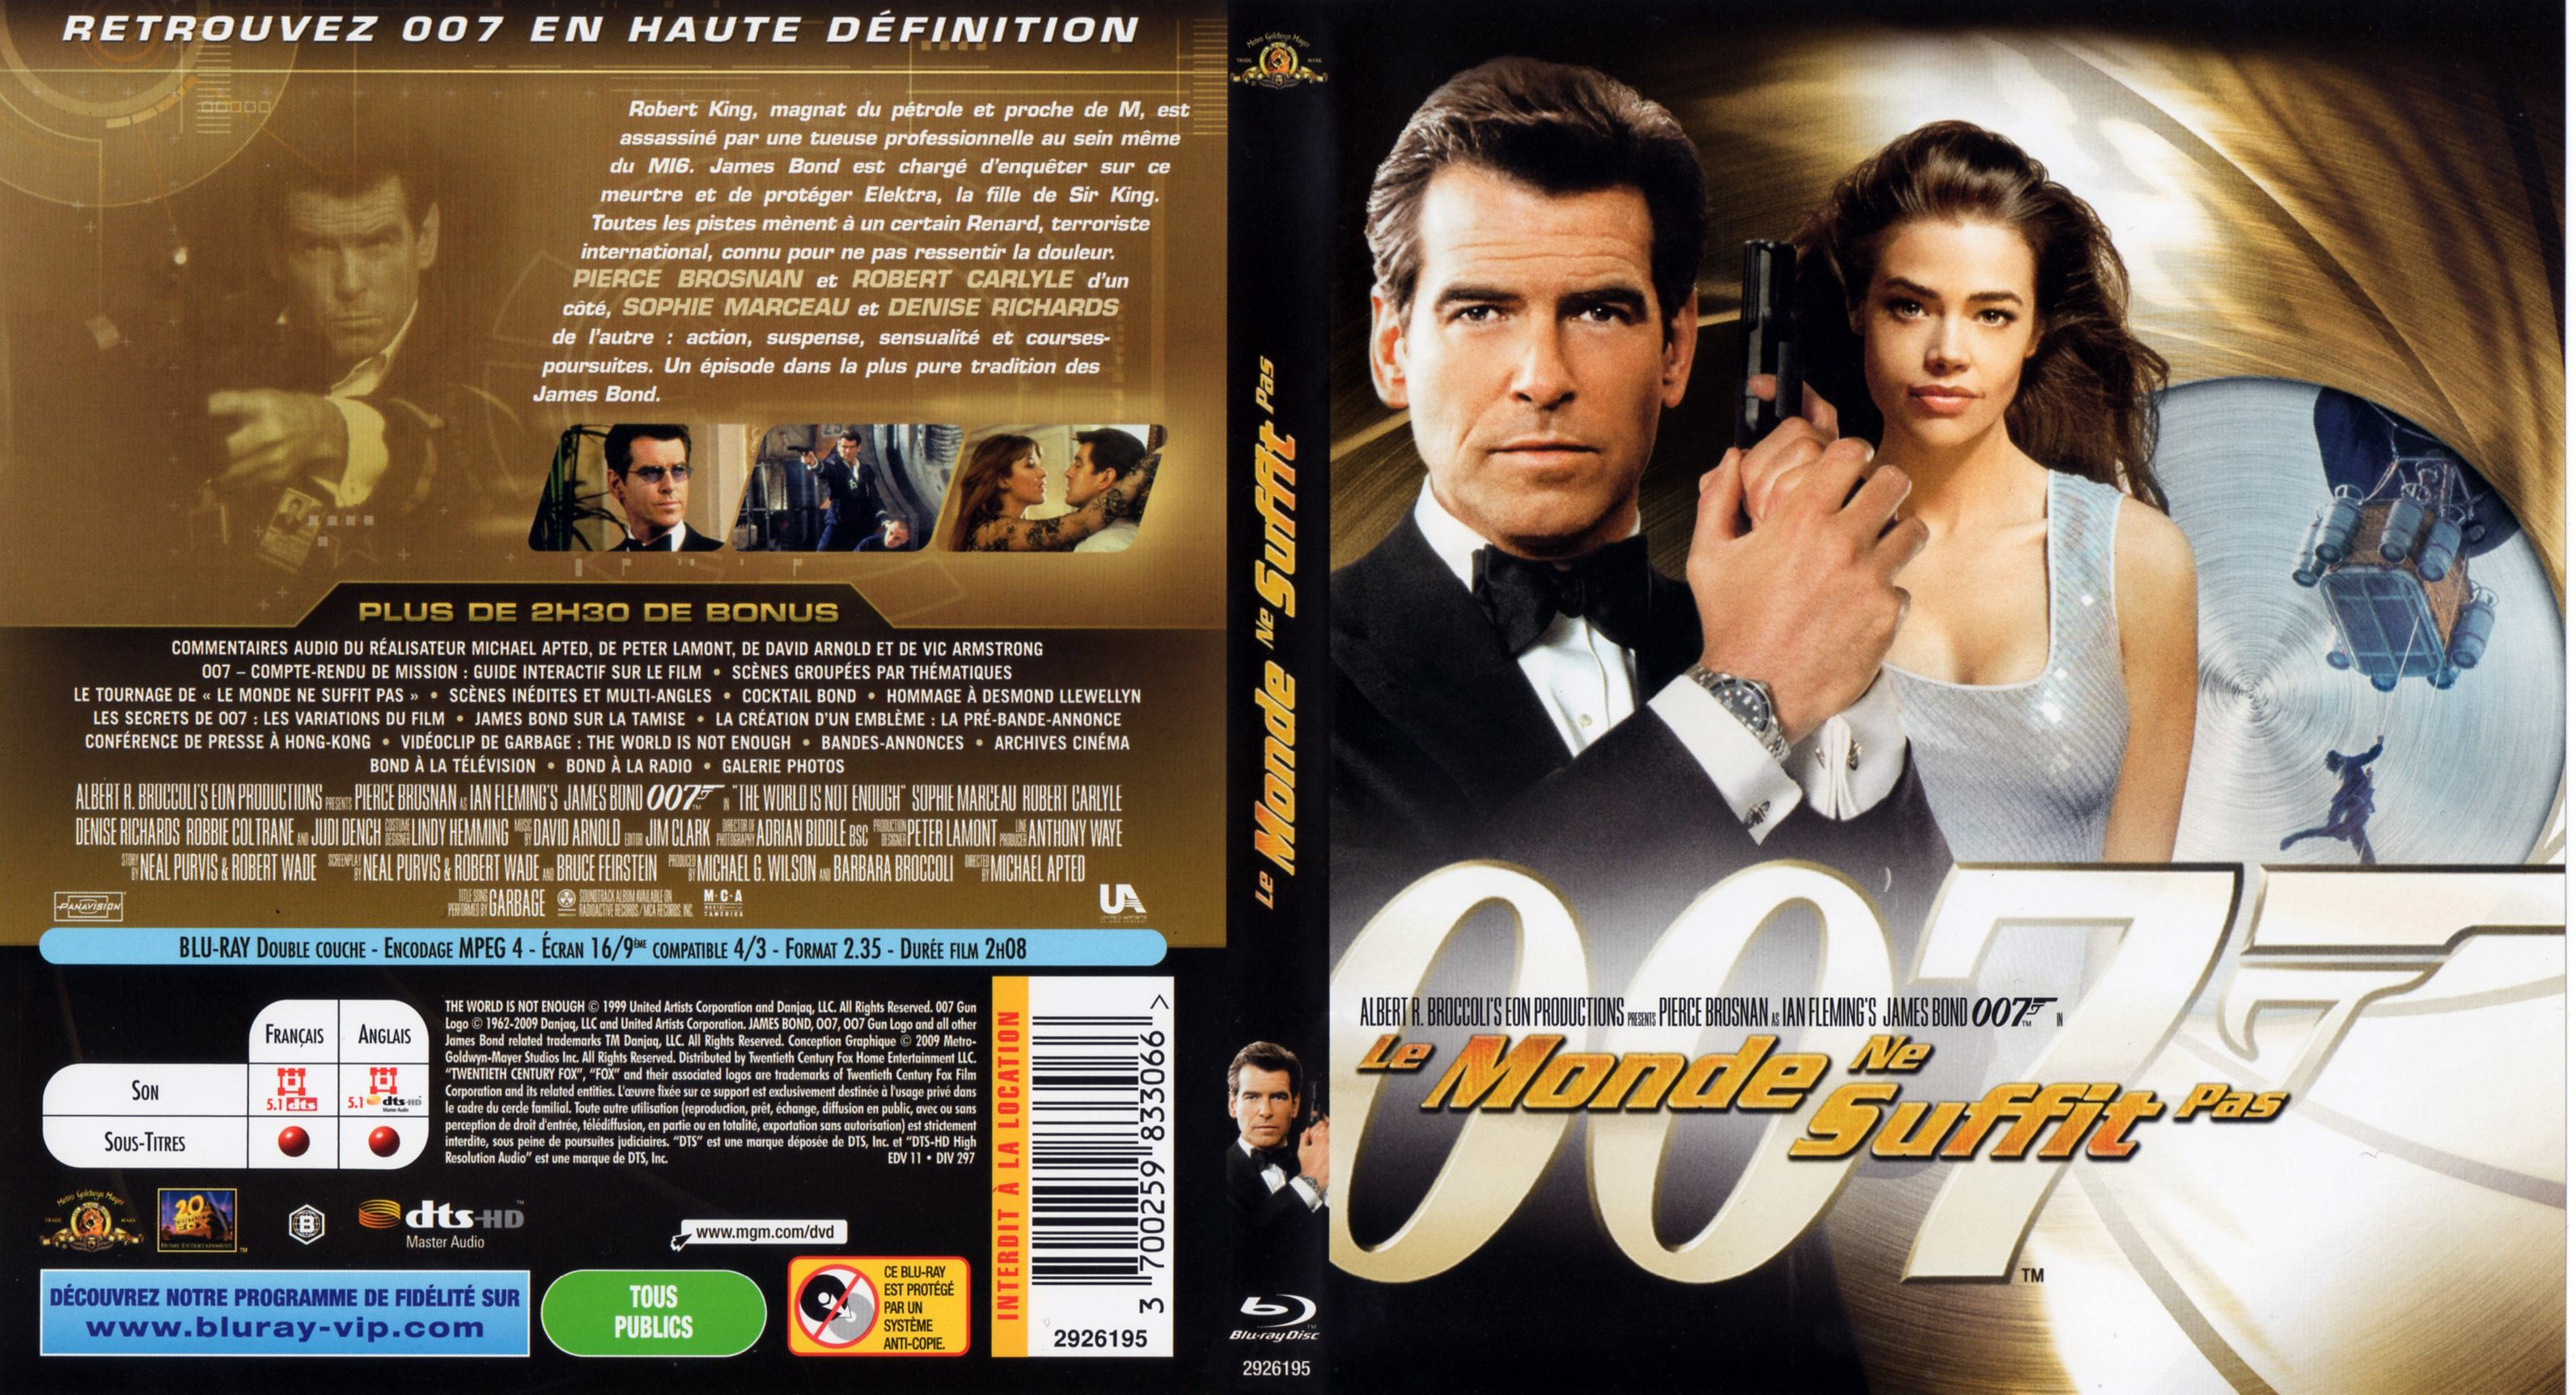 Jaquette DVD James bond 007 Le monde ne suffit pas (BLU-RAY)